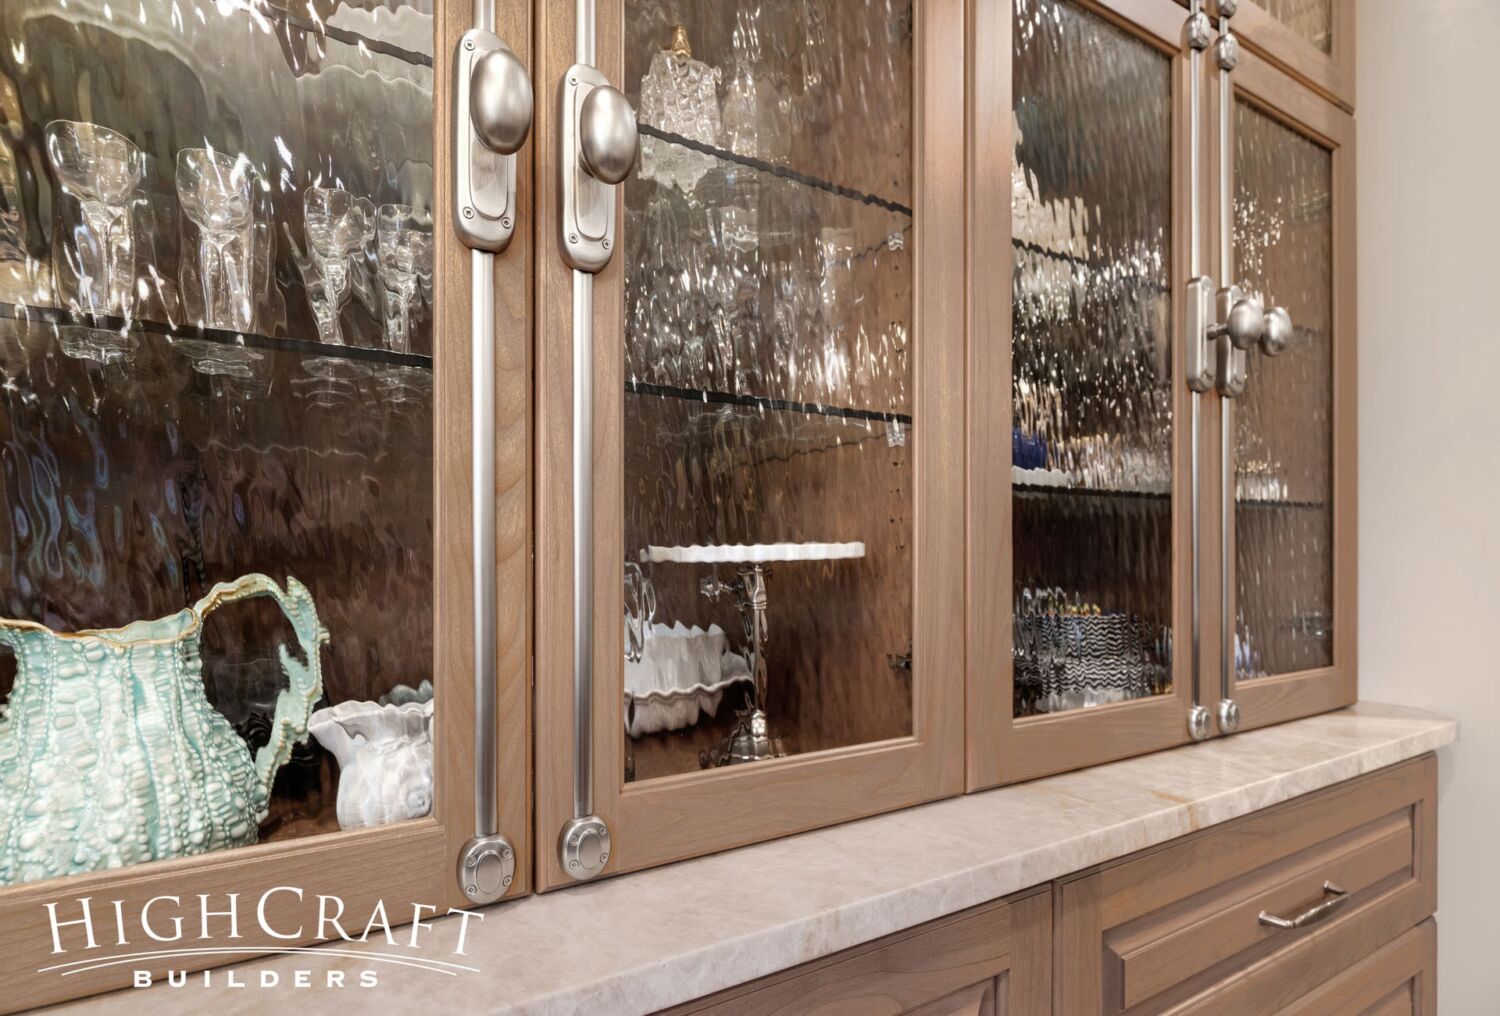 kitchen-remodel-glass-cabinet-doors